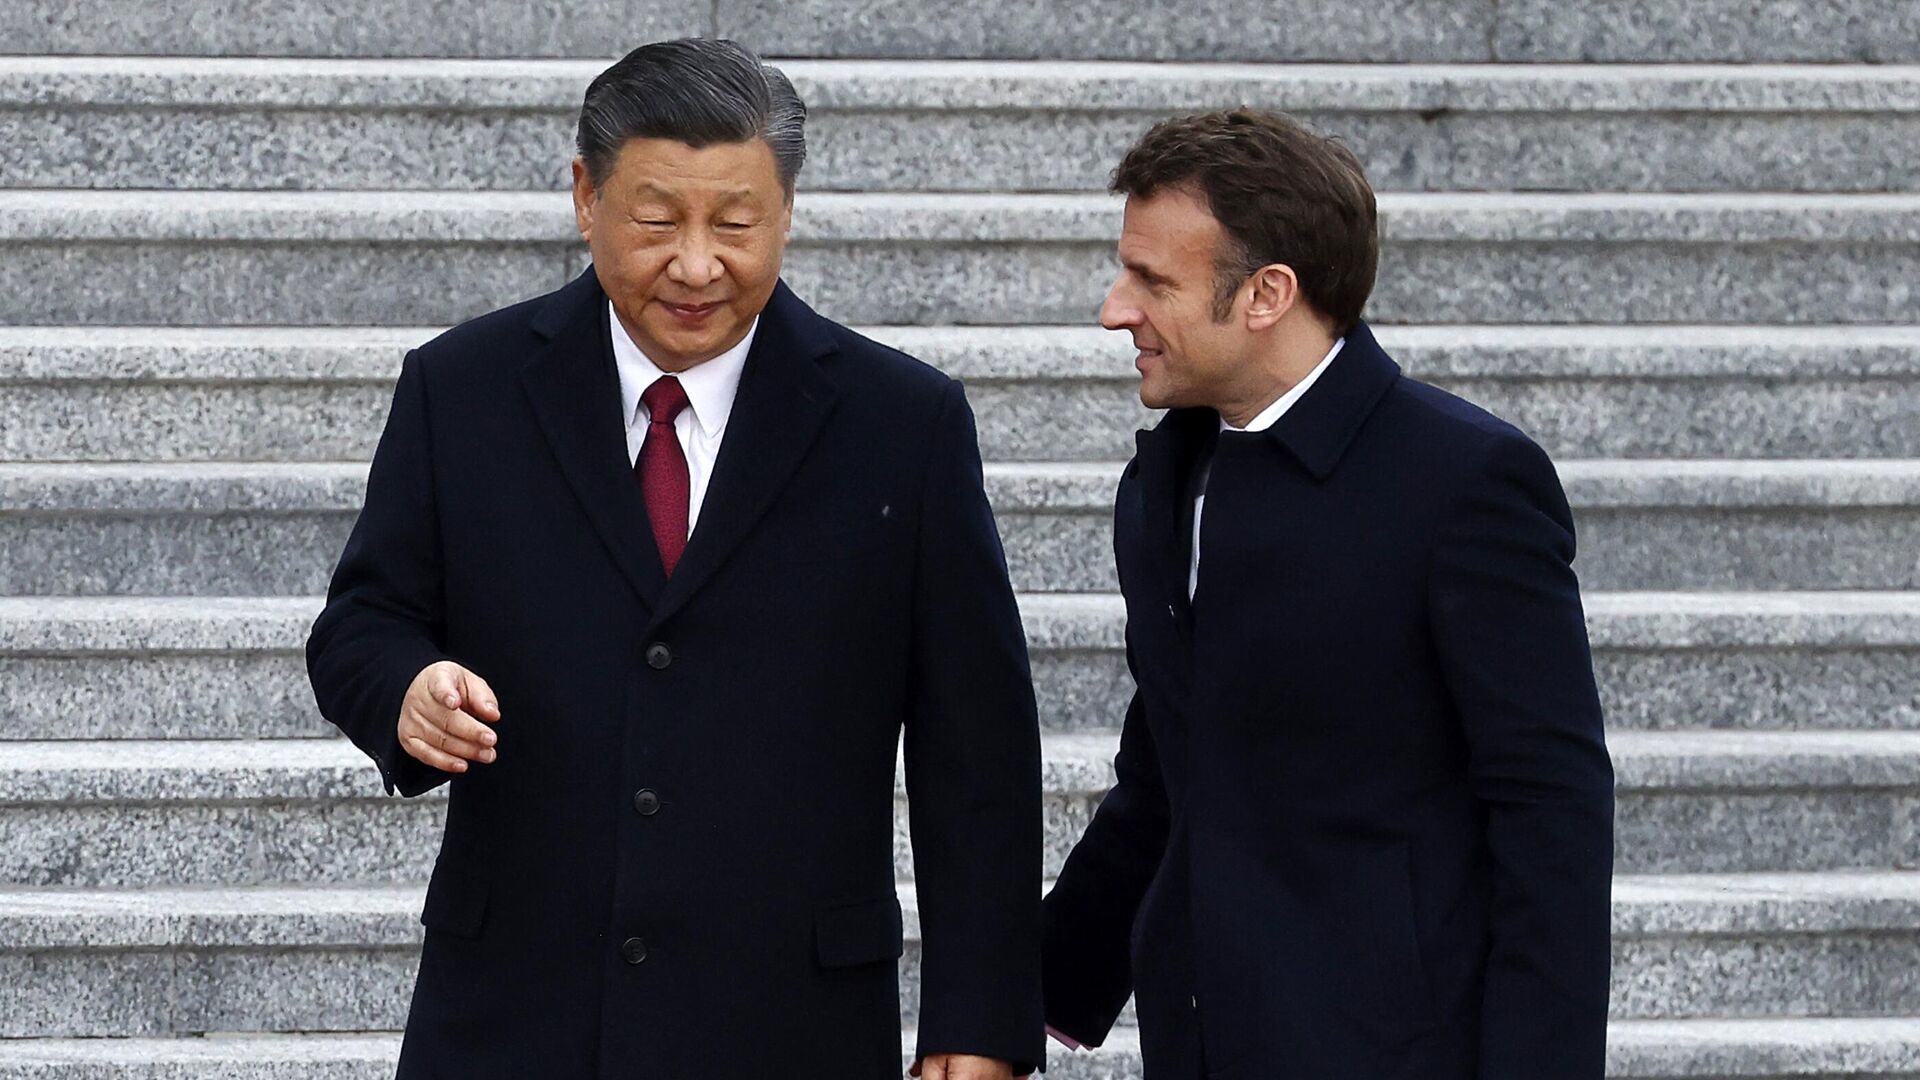 رمزگشایی از قمار اروپا در مقابل چین /شاهین ها فعال شده اند!